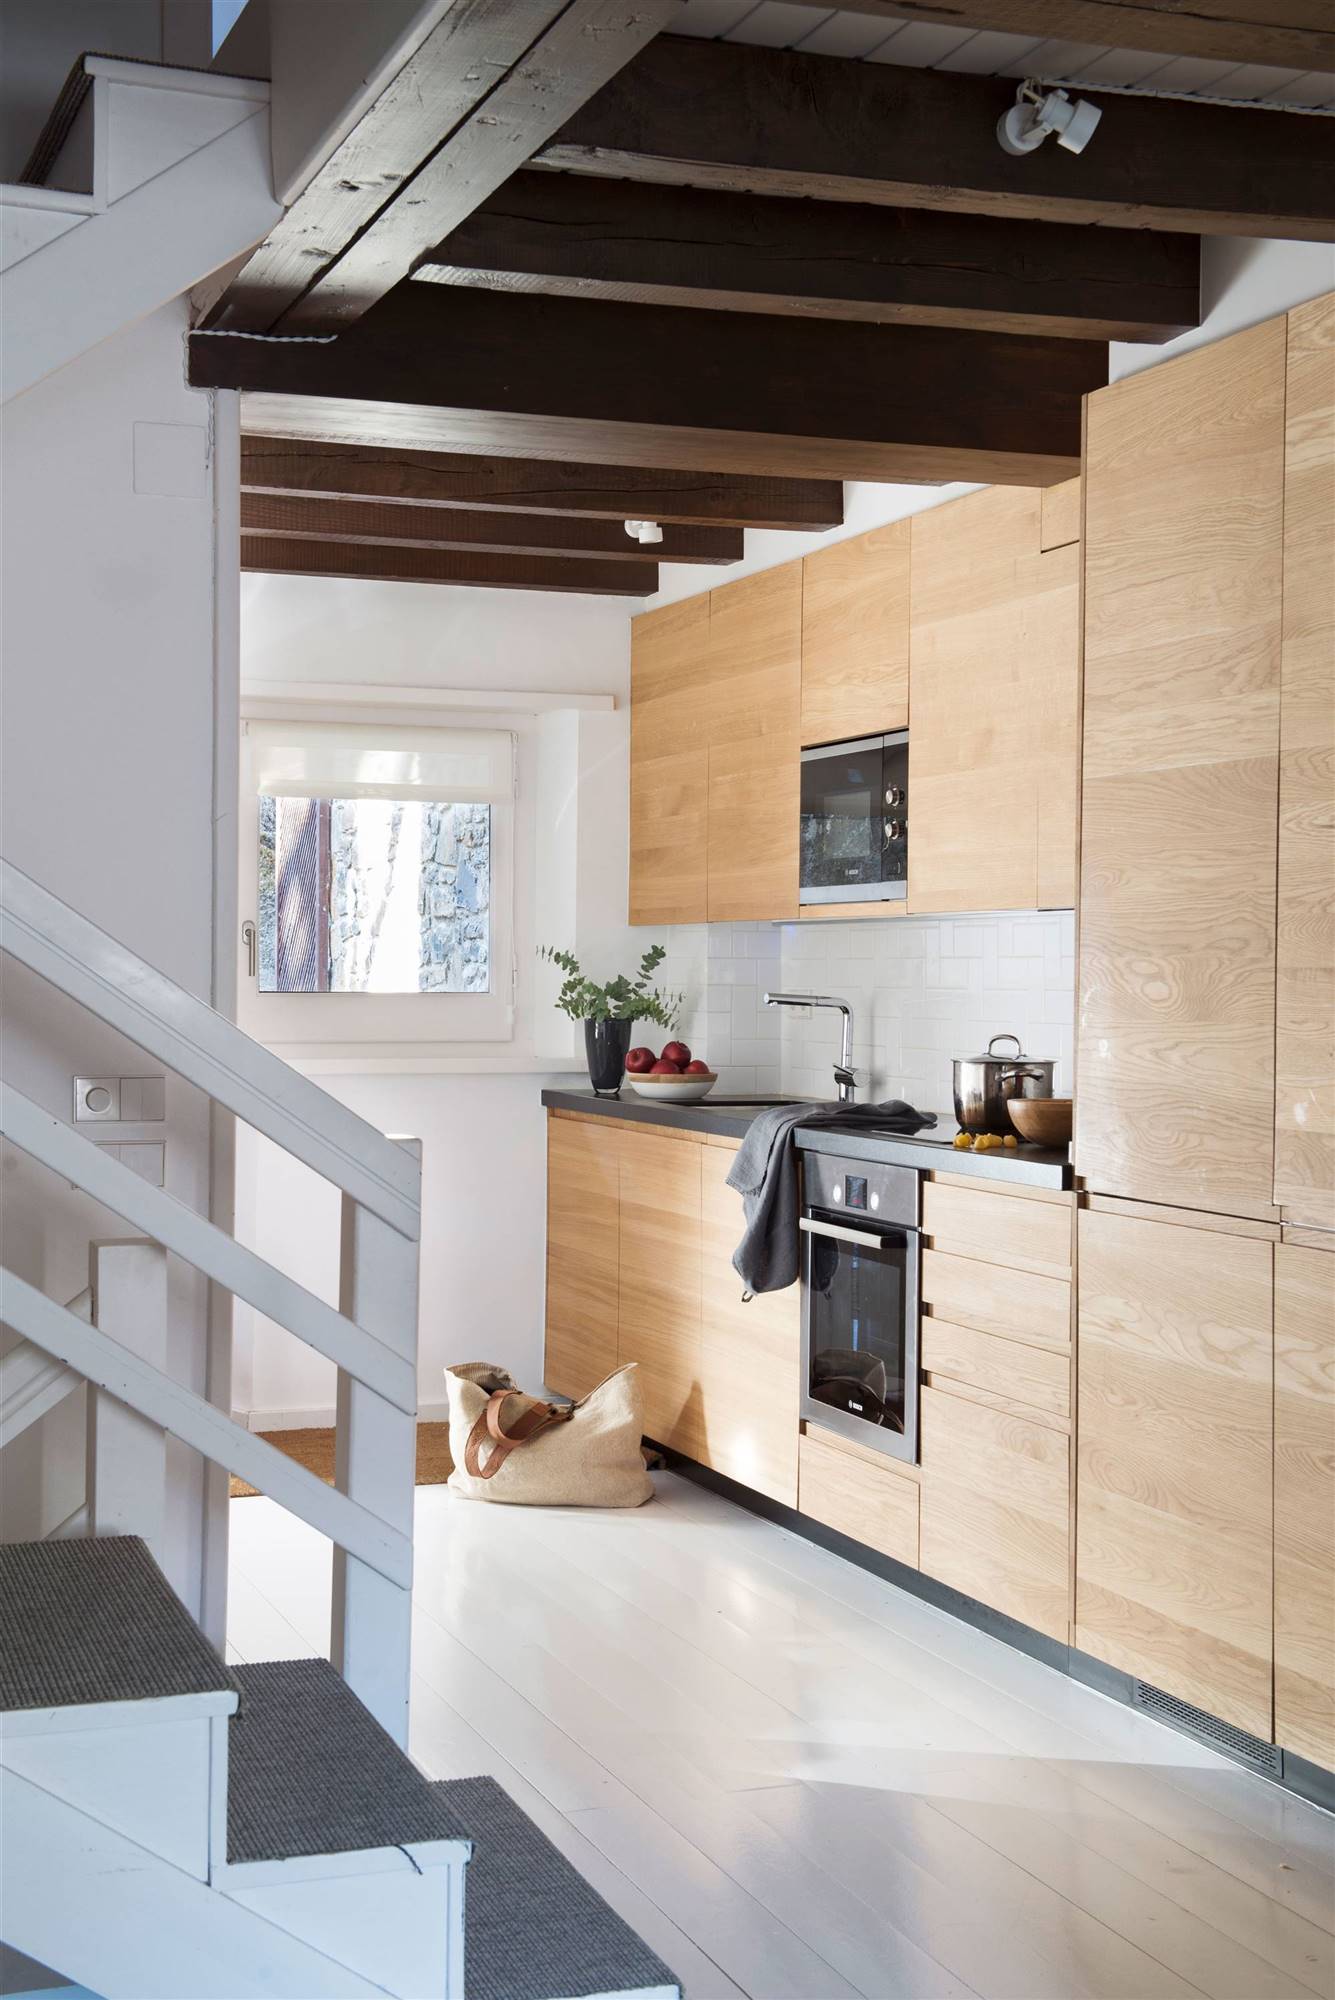 Cocina de estilo rústico moderno con muebles de madera panelados y suelo blanco. 